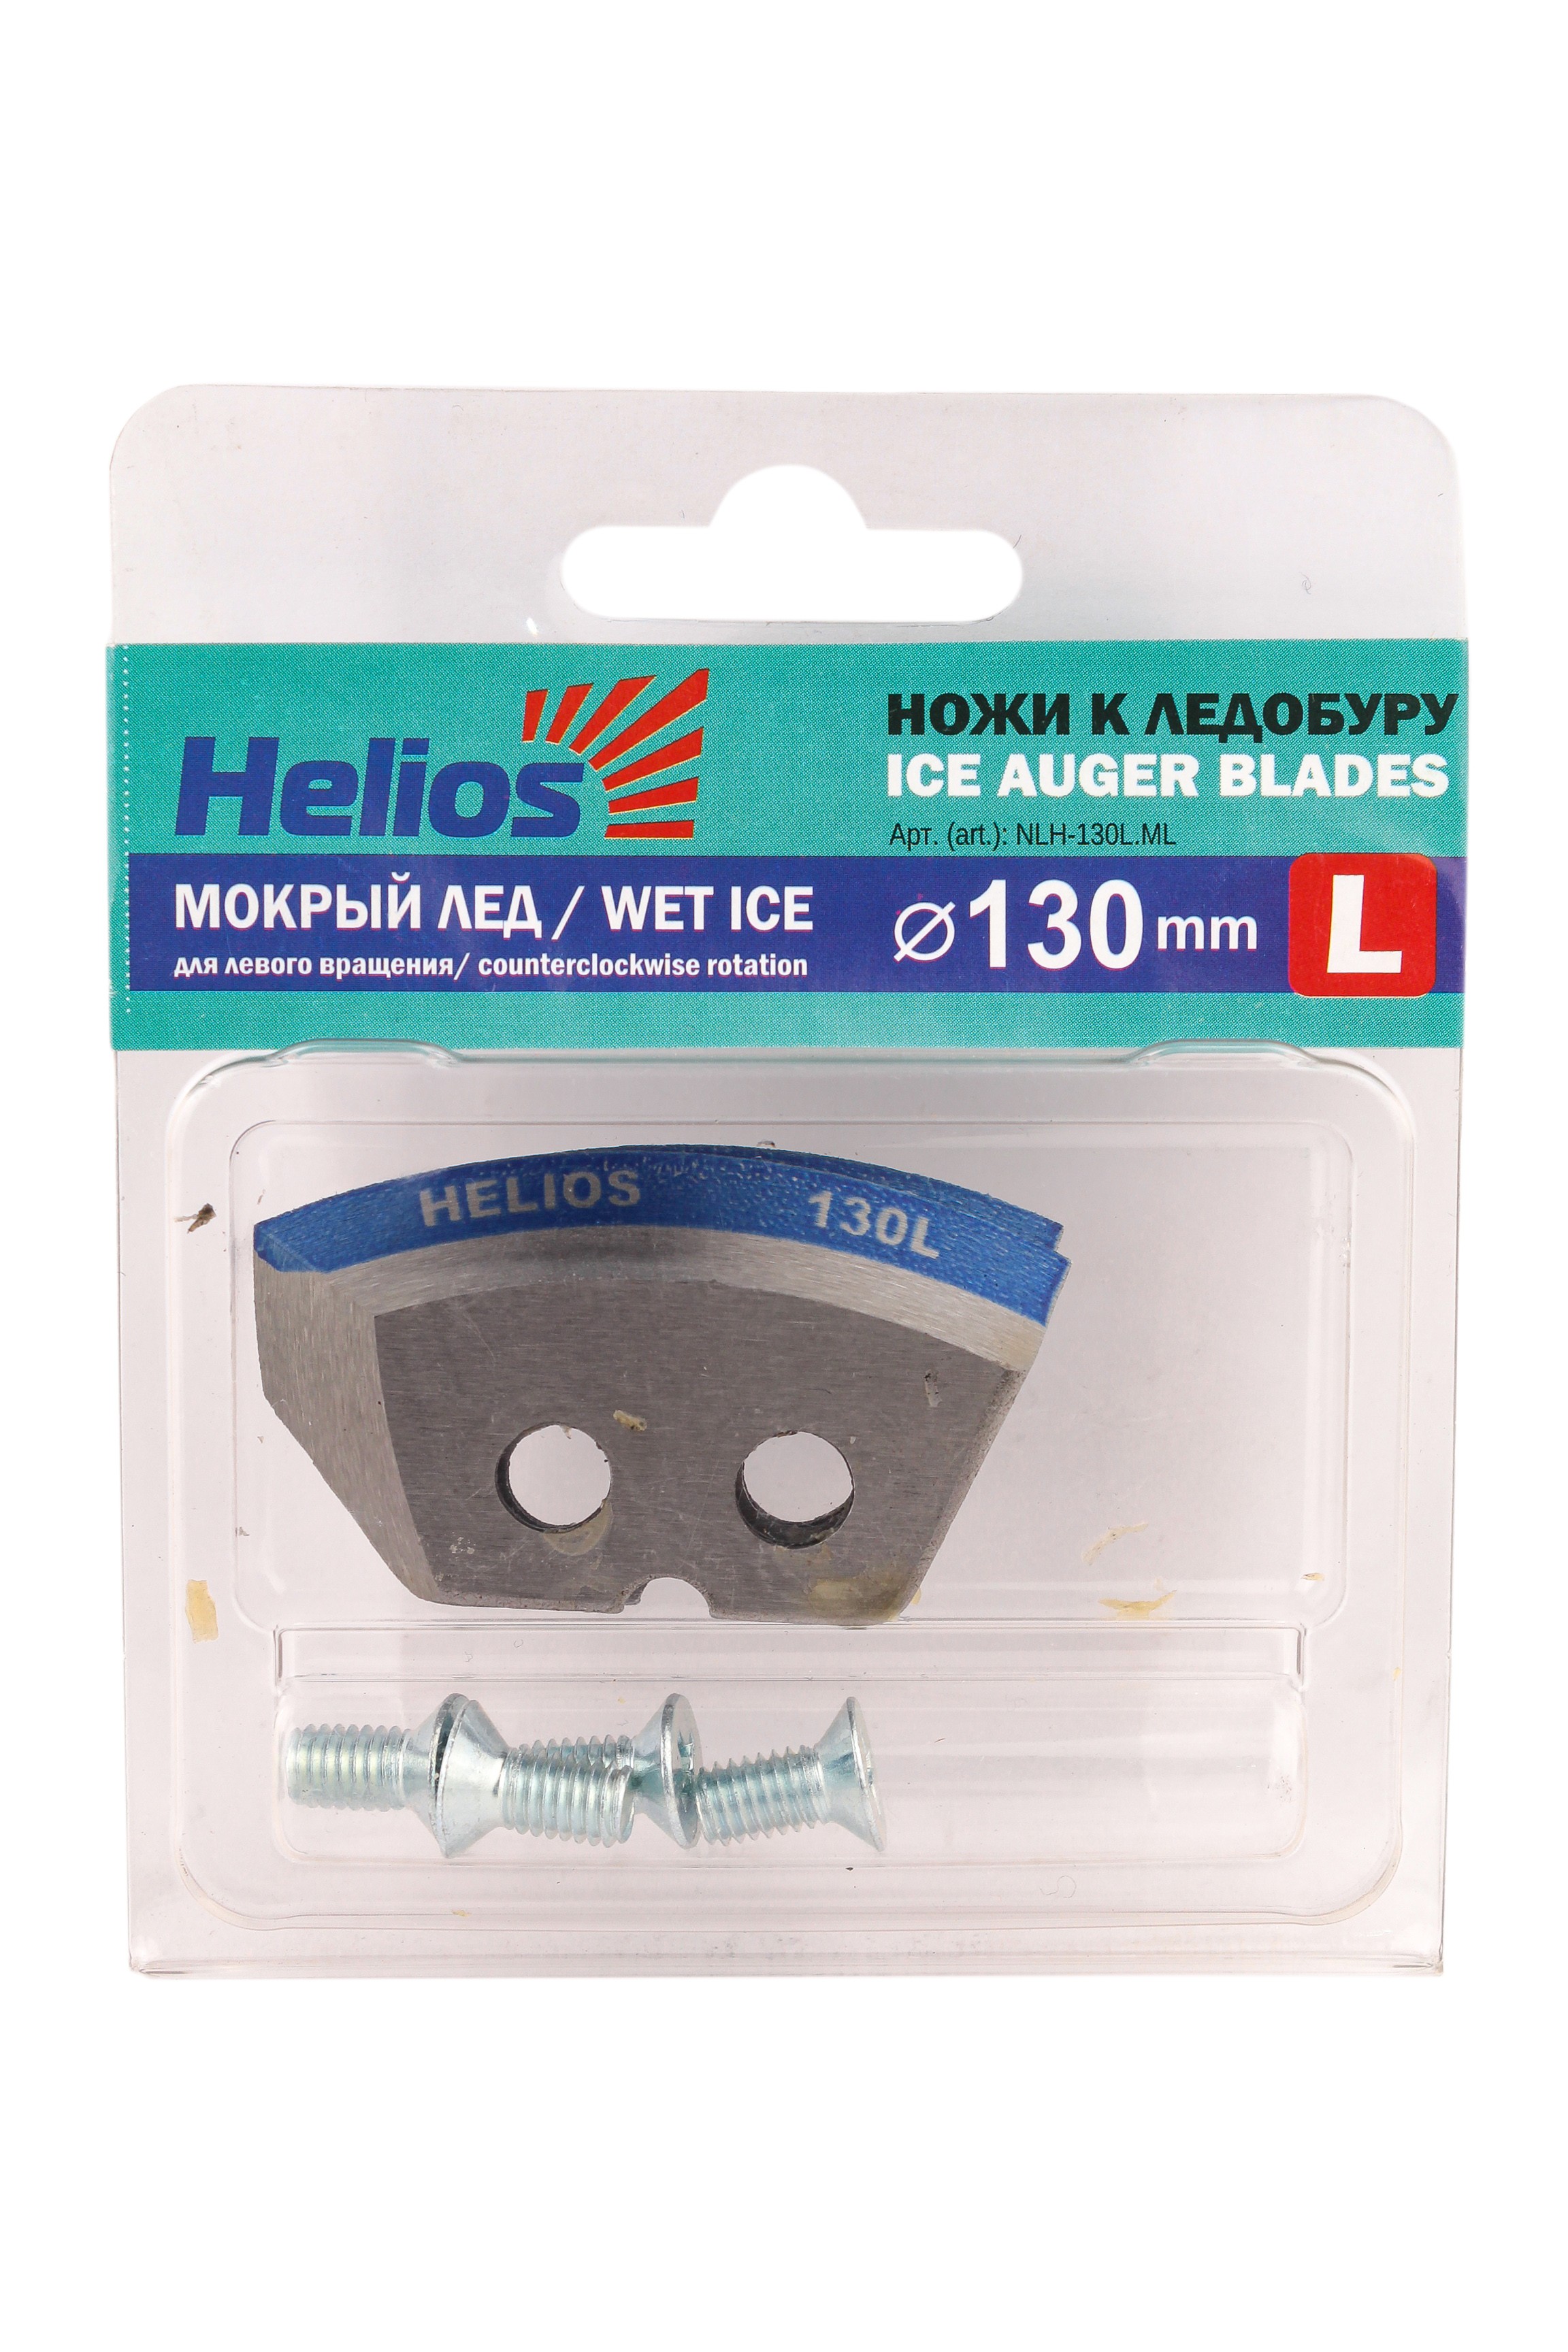 Нож Helios к ледобуру 130L полукруглый мокрый лед левое вращение - фото 1